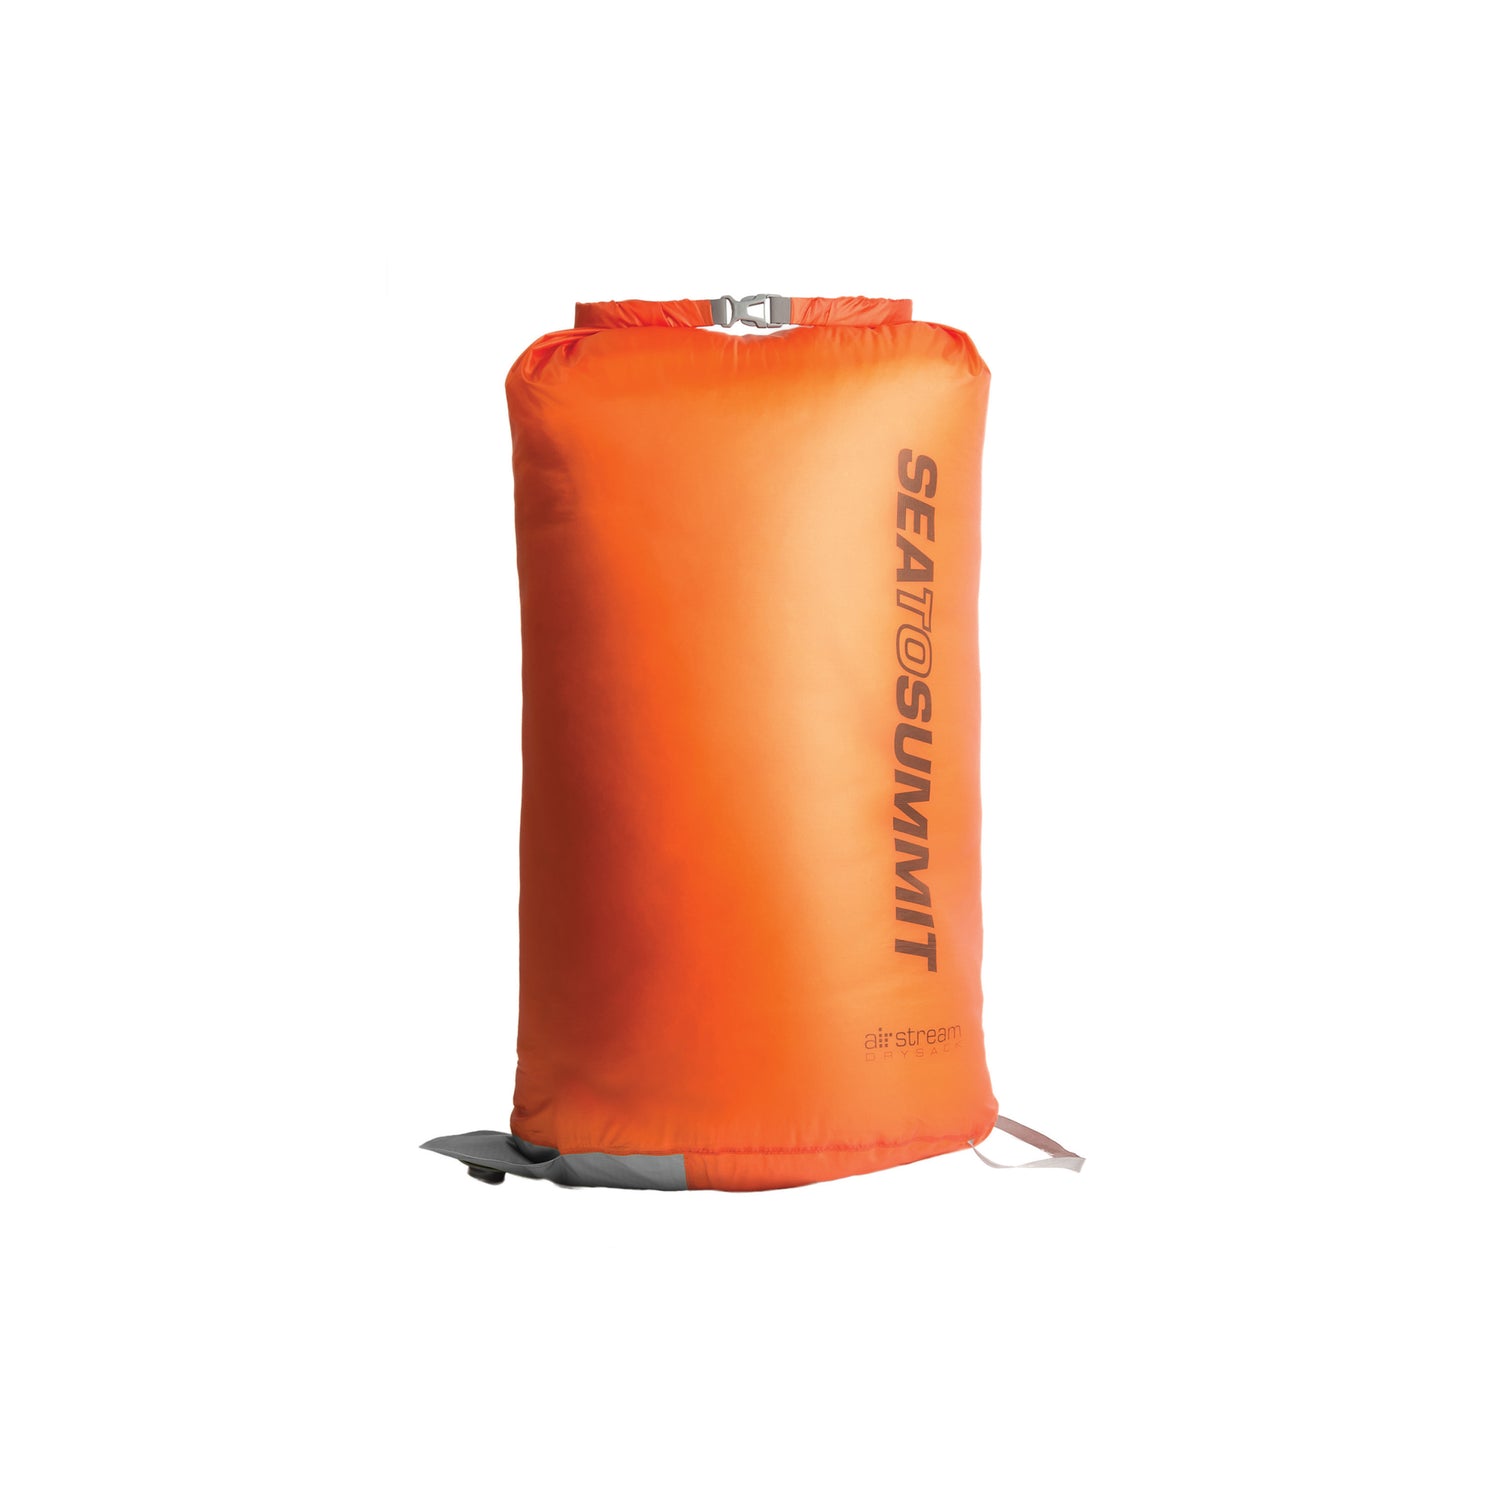 Sea to Summit Lightweight Compression Sack, 8 Liter / Spicy Orange